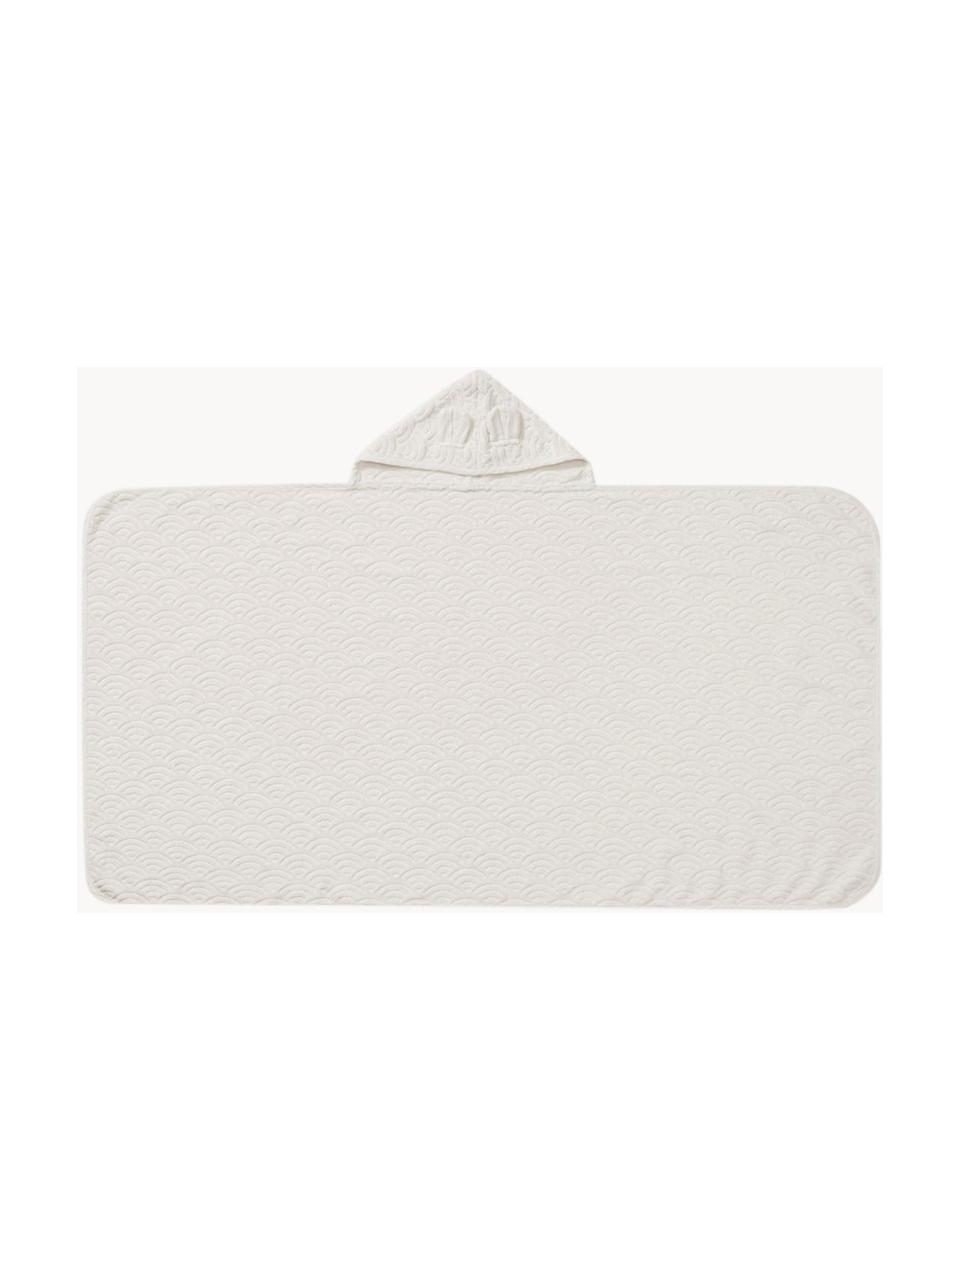 Toalla capa de algodón ecológico Wave, 100% algodón ecológico con certificado GOTS, Off White, An 70 x L 130 cm